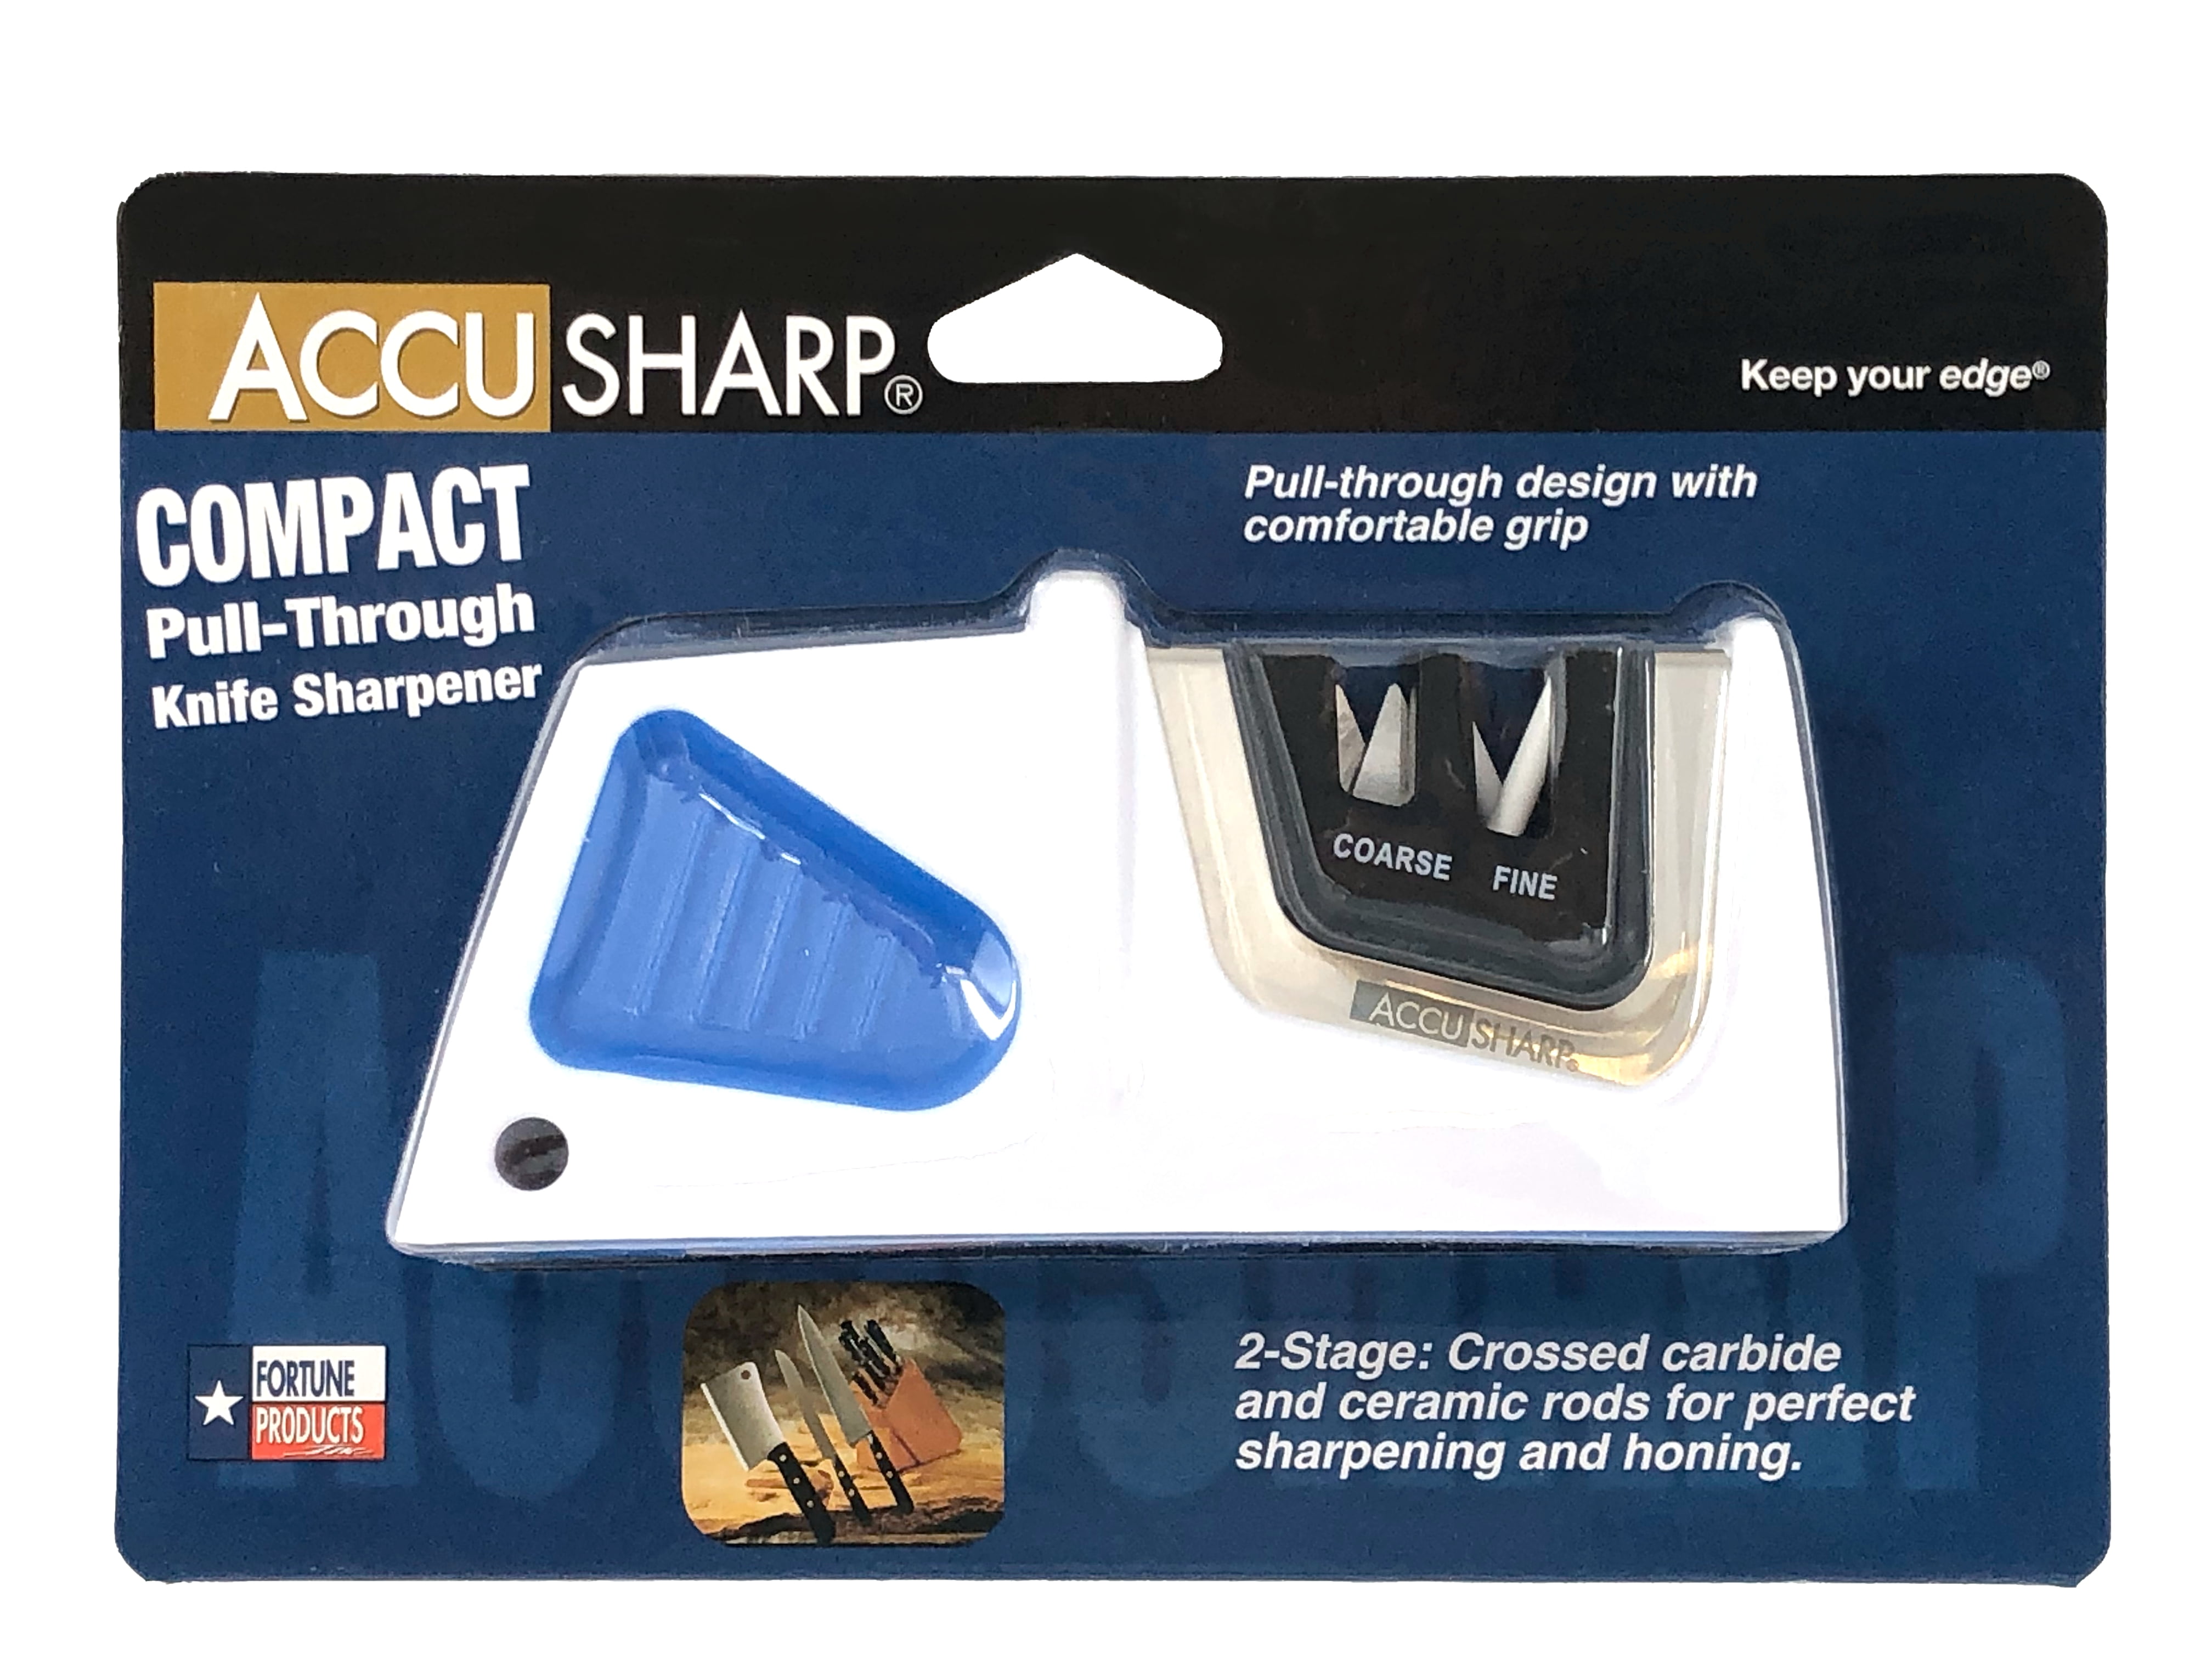 Accusharp Pull-Through Knife Sharpener